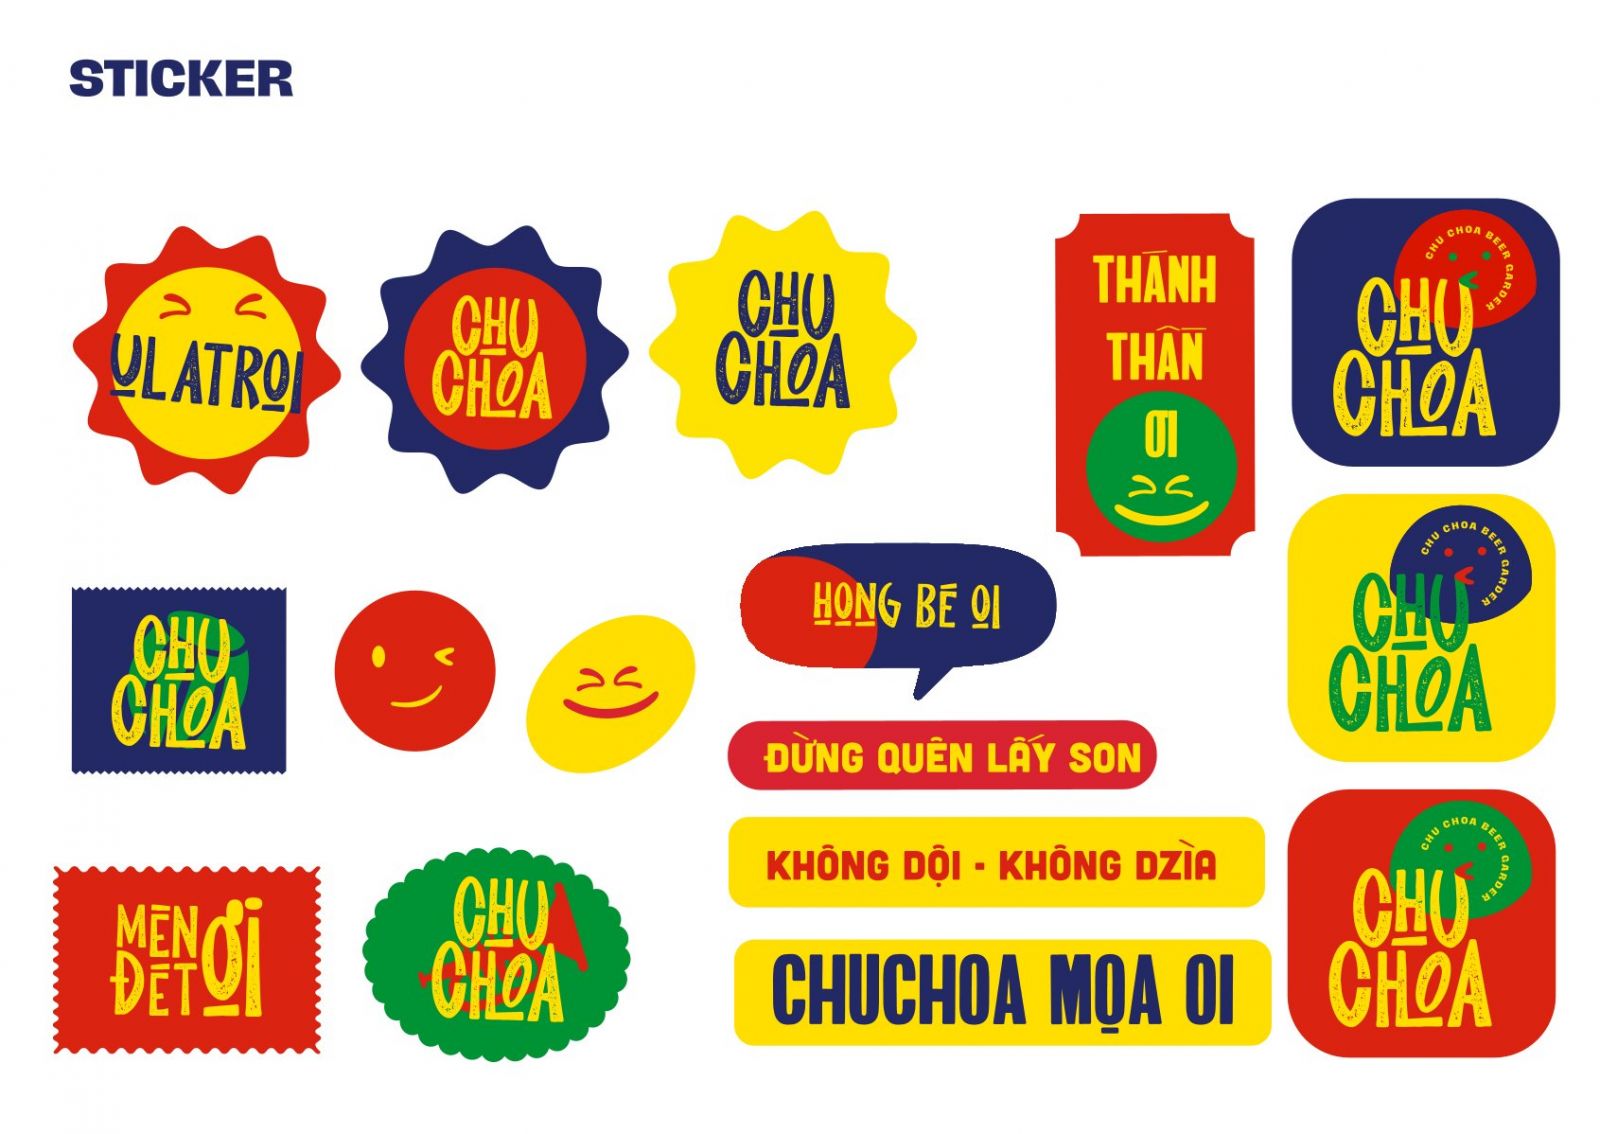 Sticker trong nhận diện thương hiệu Chu Choa Beer Garden